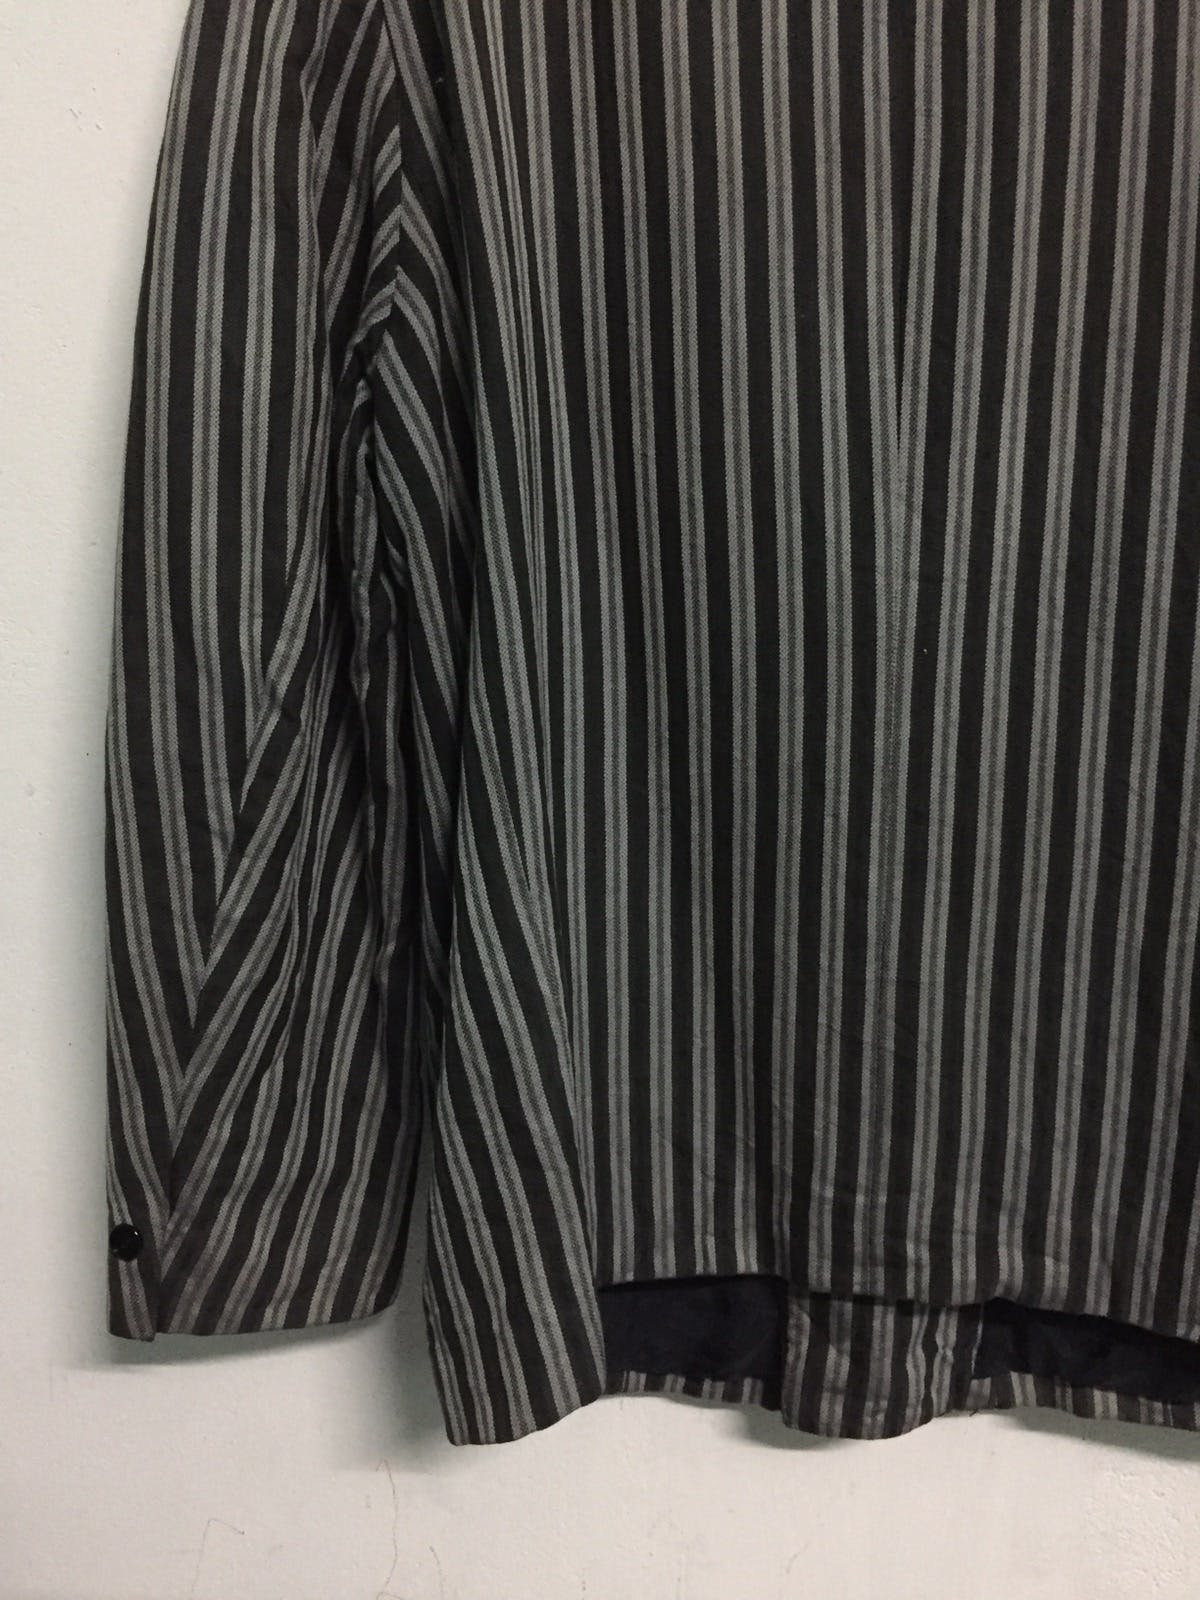 Kenzo Zebra Stripes Jacket Coat Made in Japan - 10